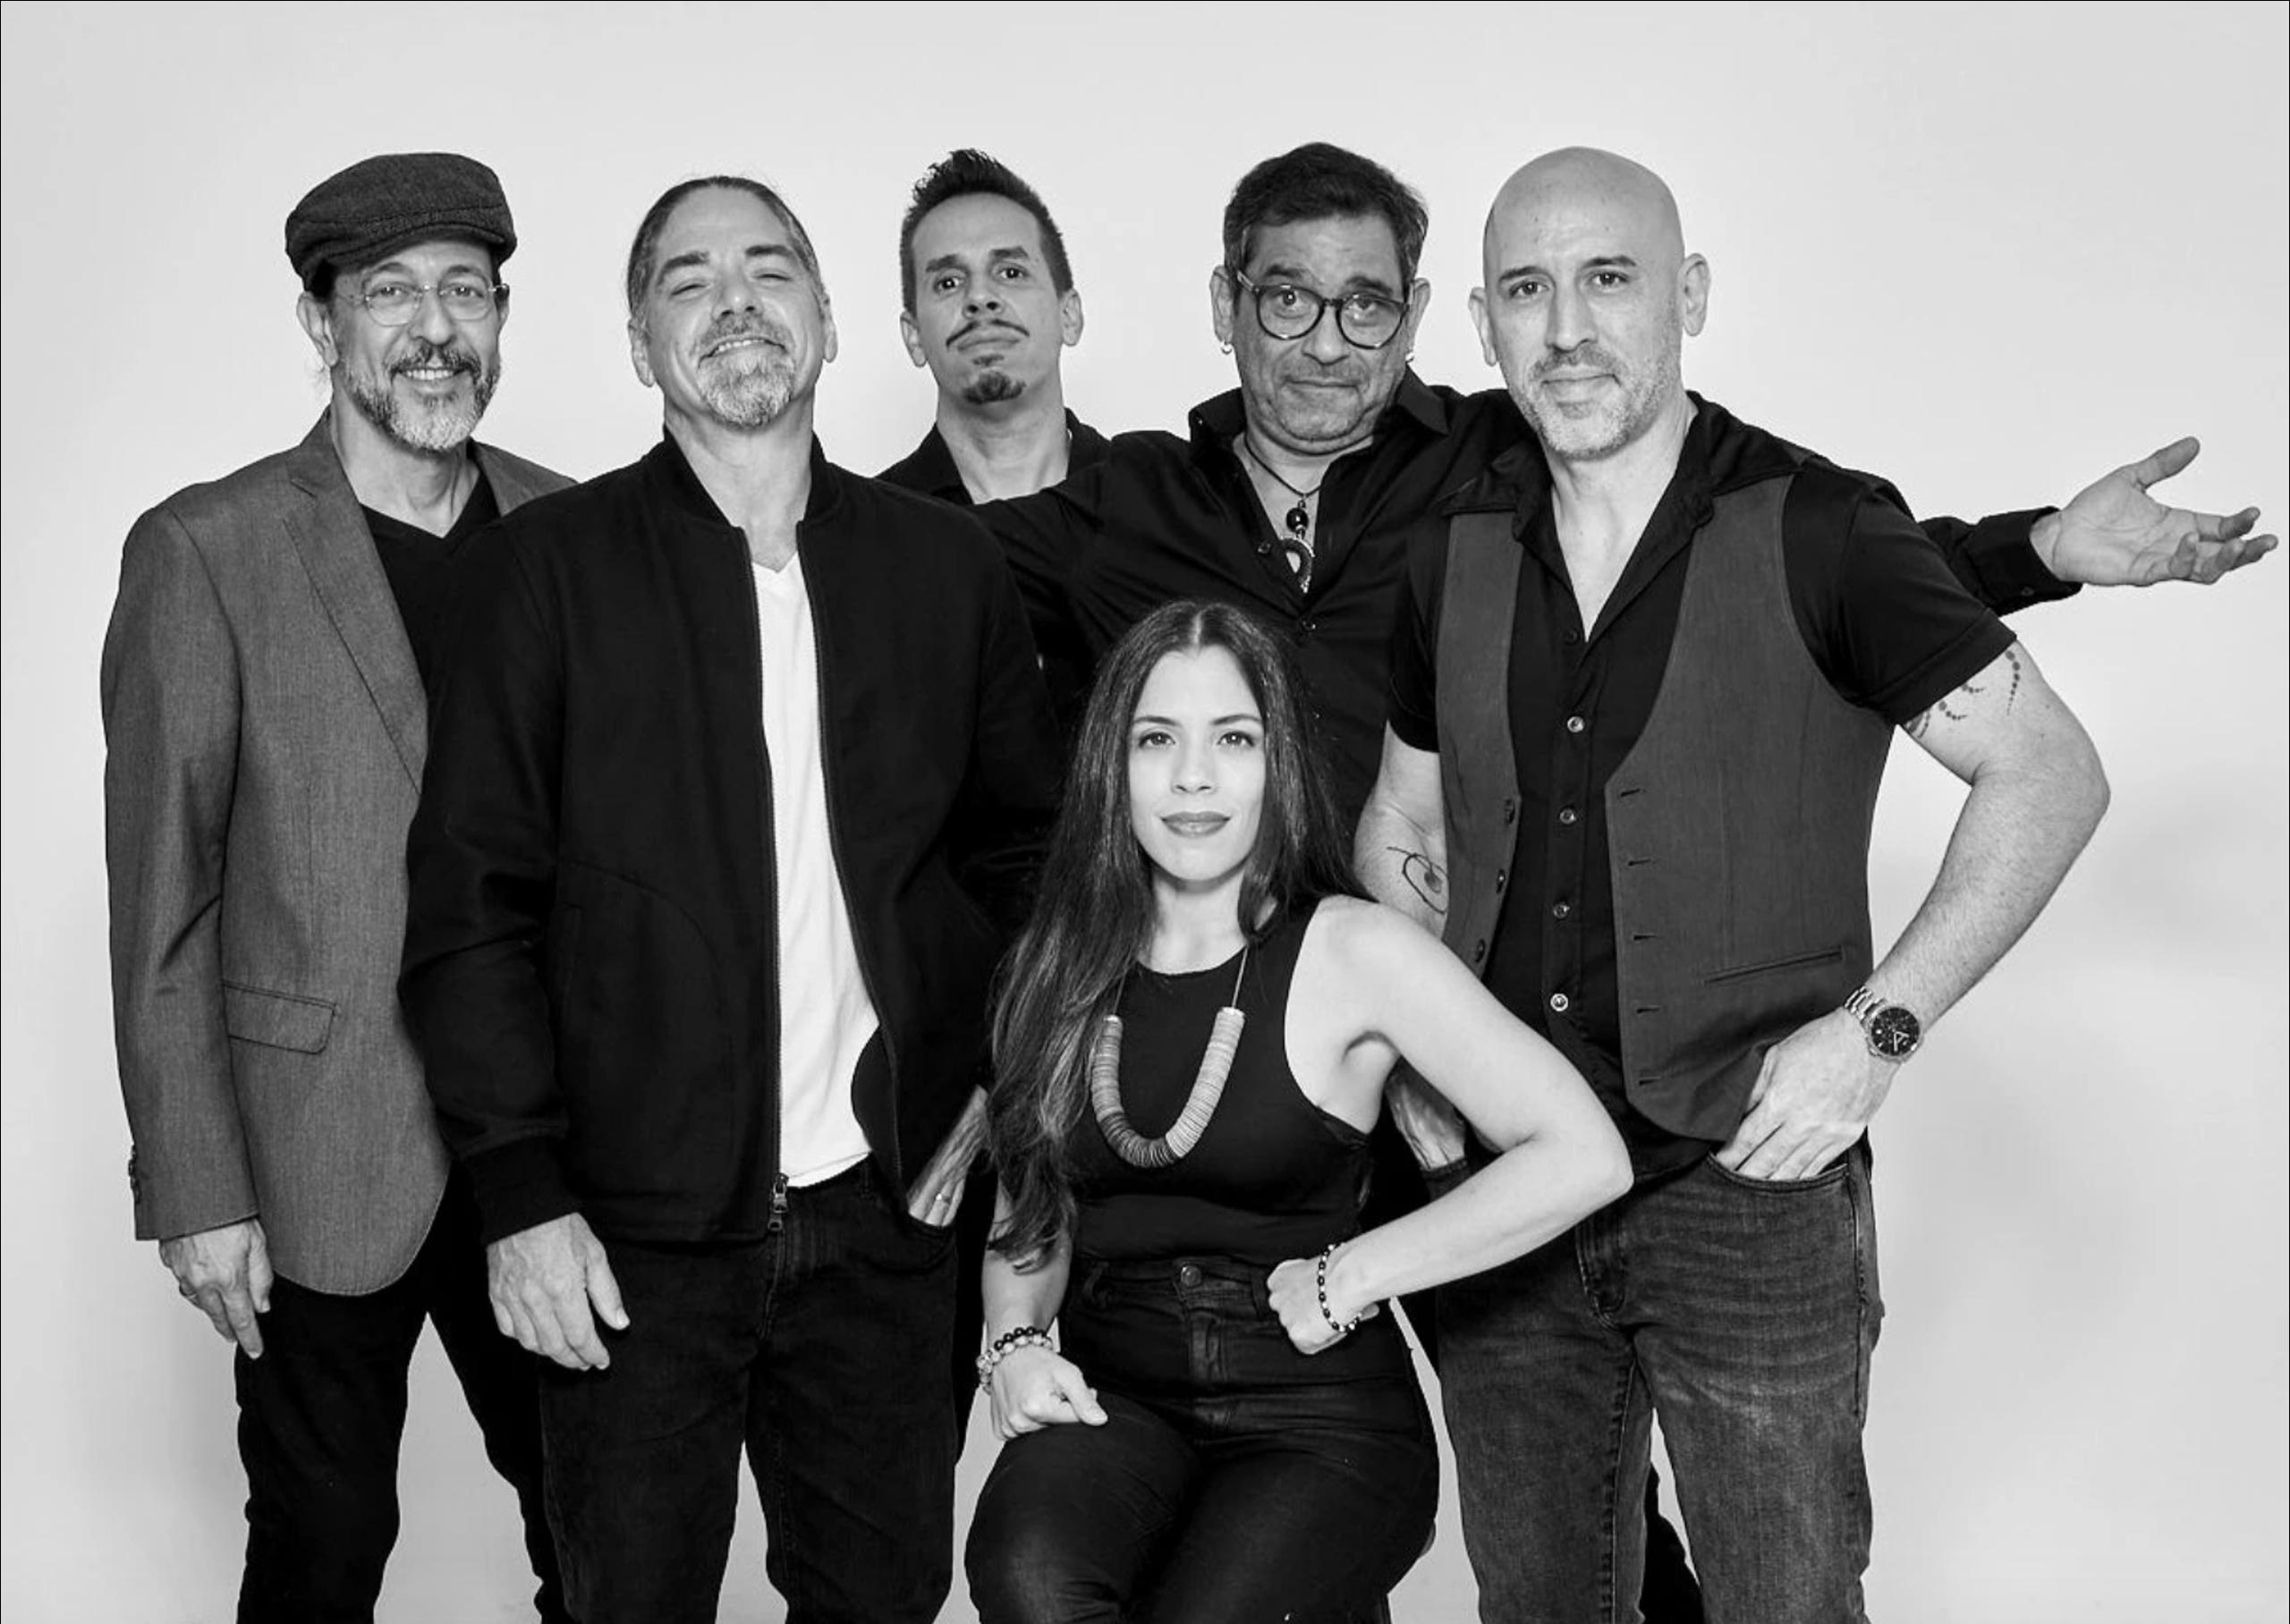 El  grupo está compuesto por Tito Auger, Rucco Gandía, Nore Feliciano, Mikie Rivera, Nitayno Arayoán y Walter Morciglio.